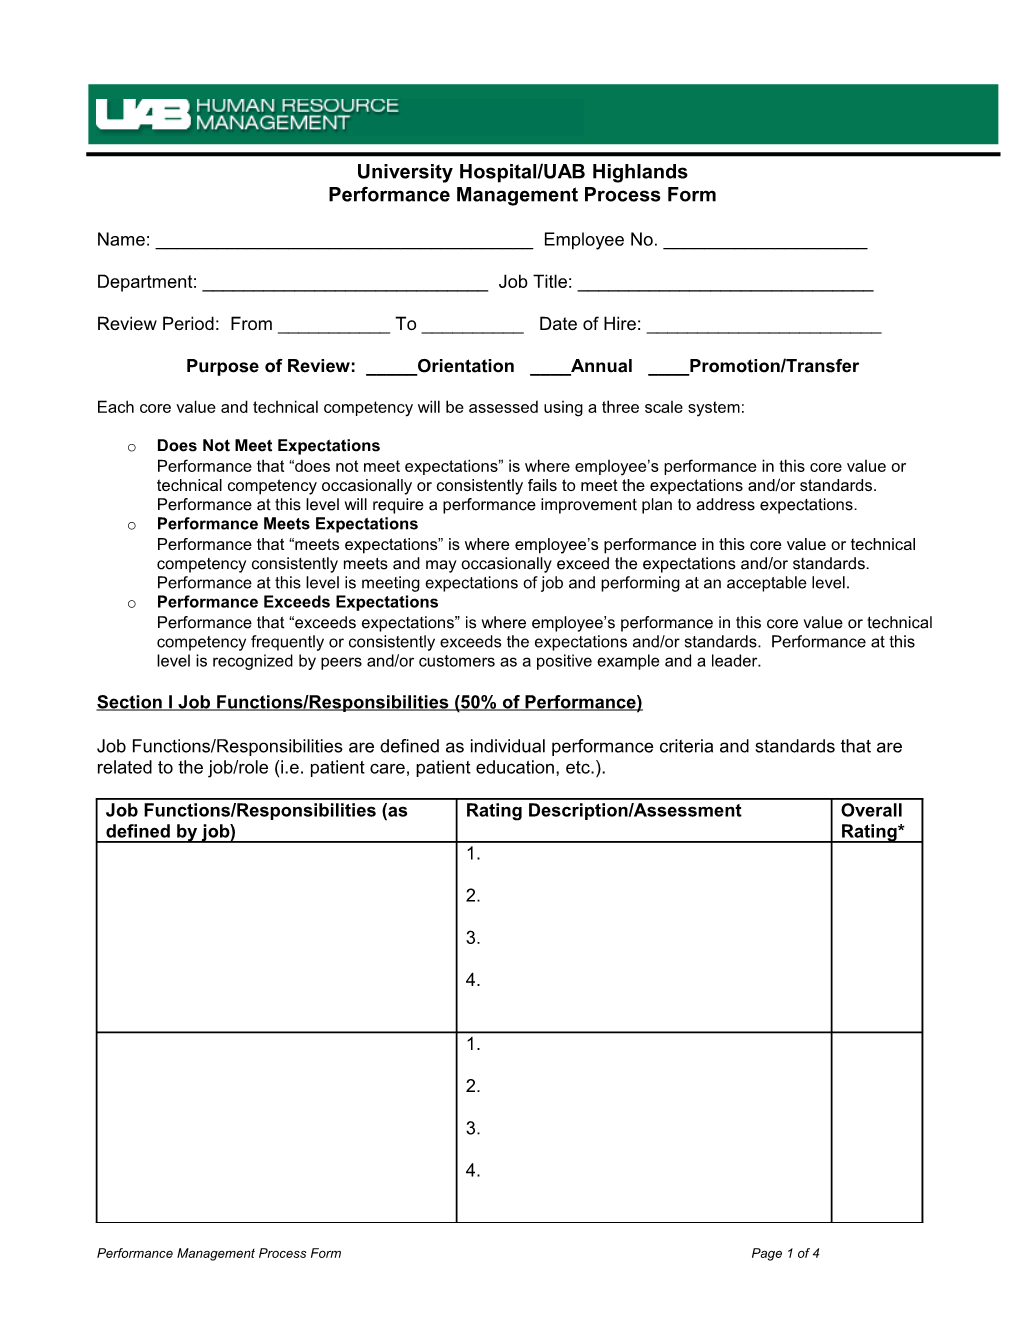 Performance Management Process Form Template FJ#2